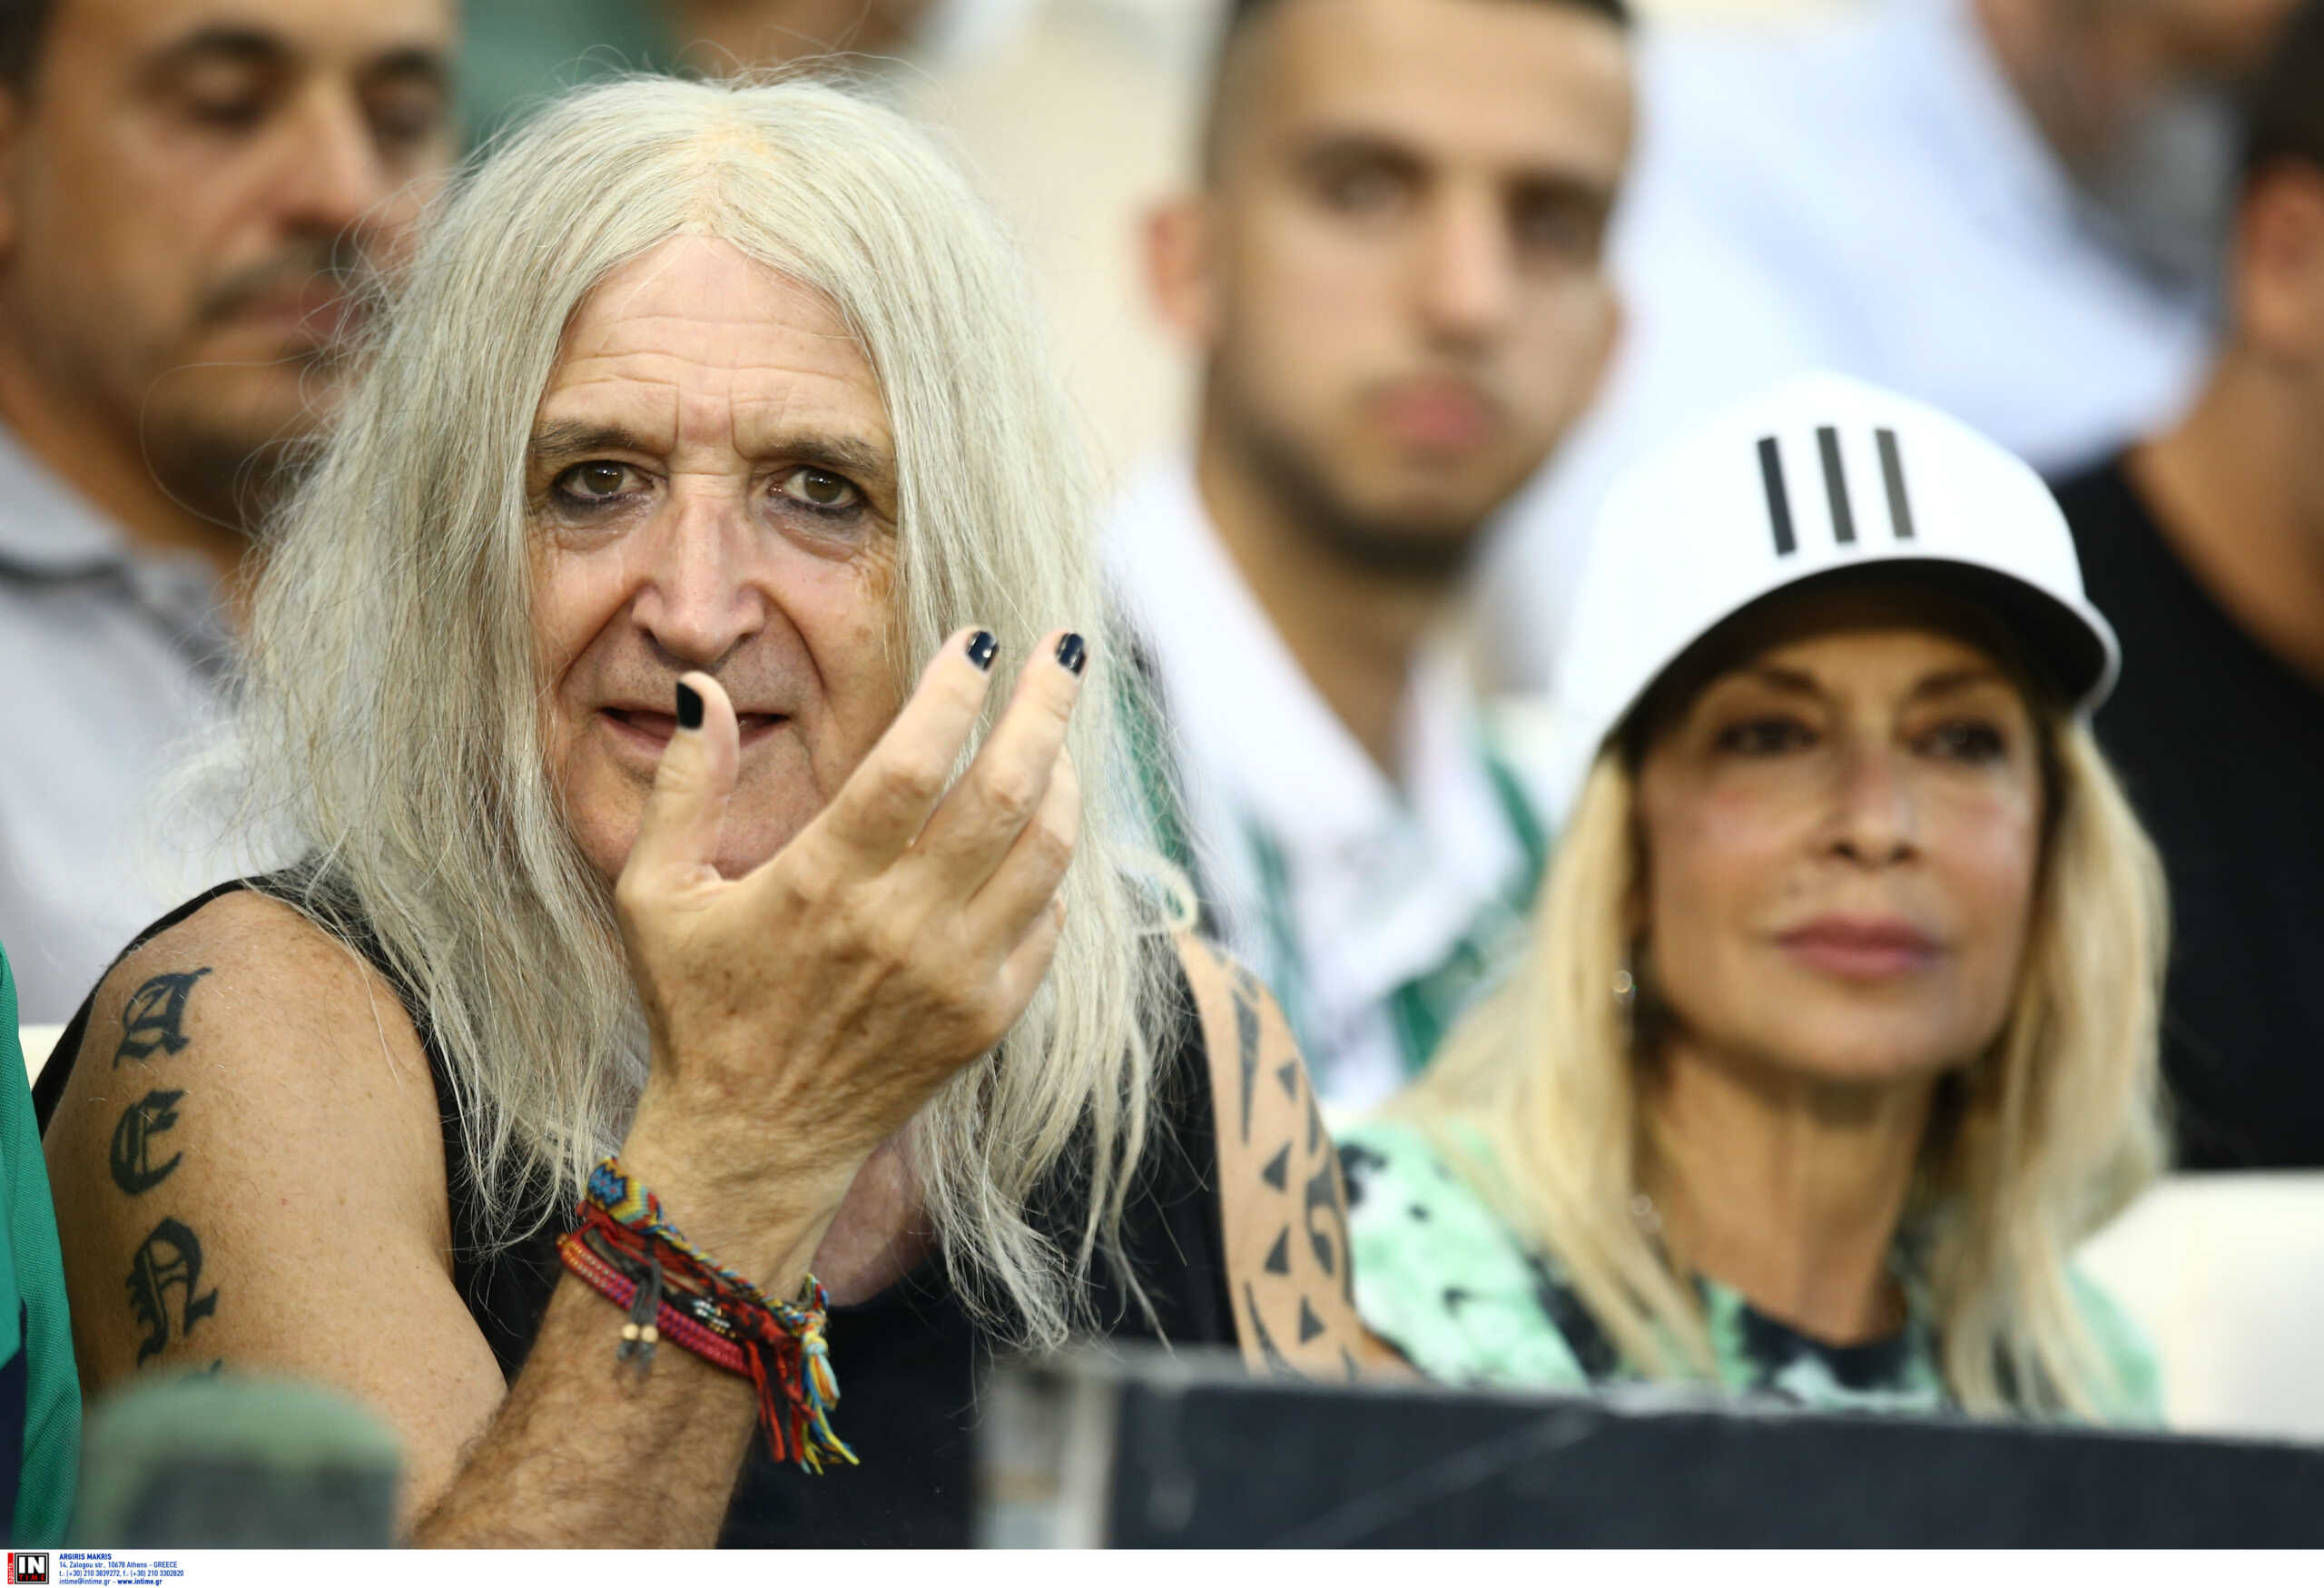 Νίκος Καρβέλας: Απίστευτος χαβαλές στα social media με την εμφάνισή του στο γήπεδο του Παναθηναϊκού